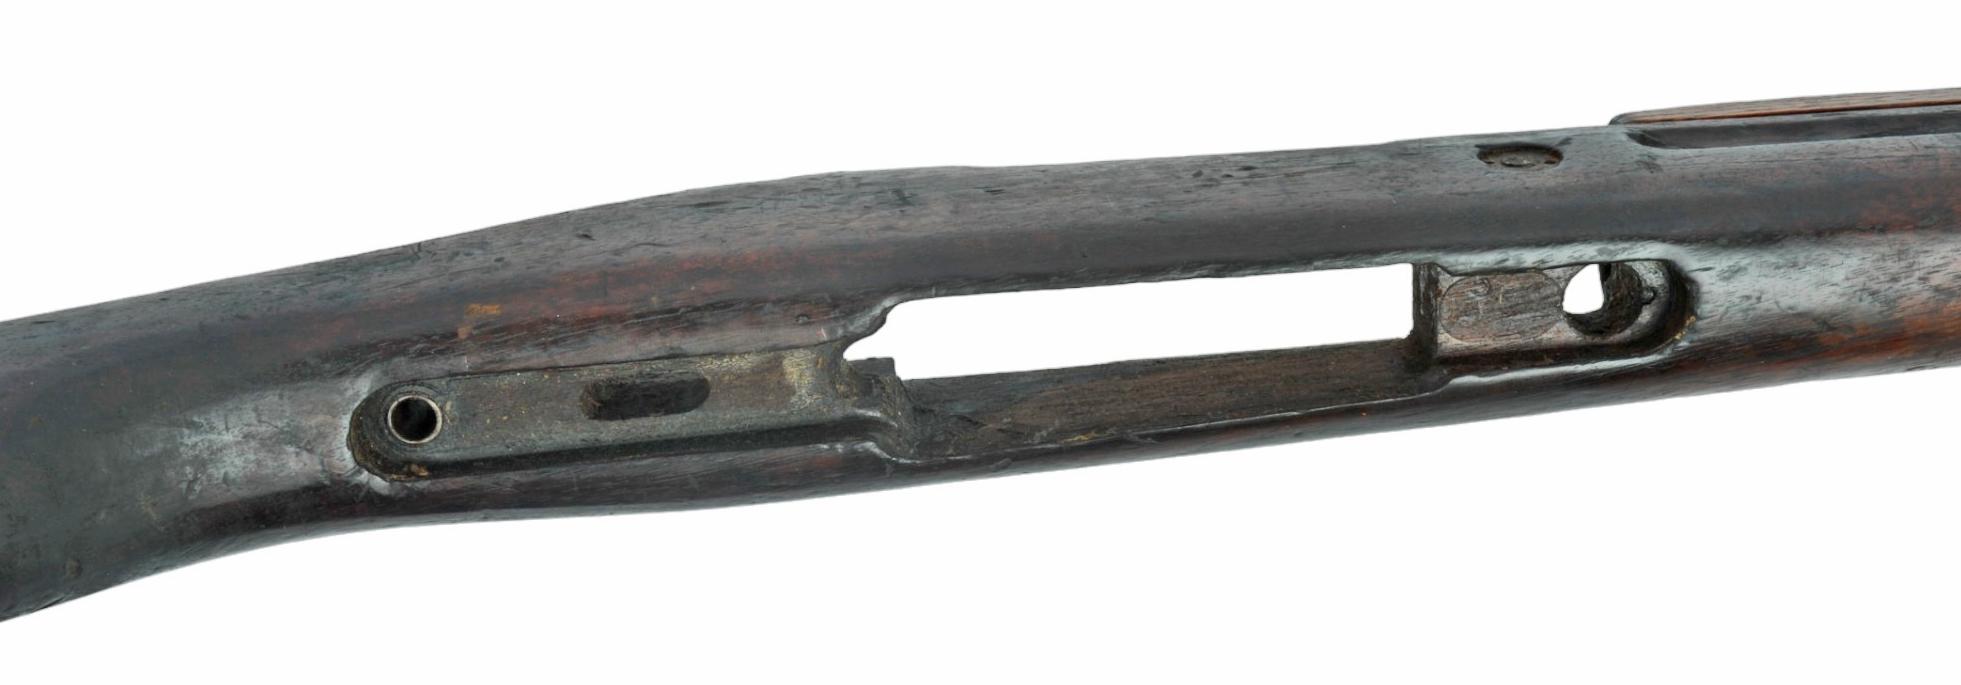 Czech Military WWII VZ-24 Mauser Rifle Stock (JMT)